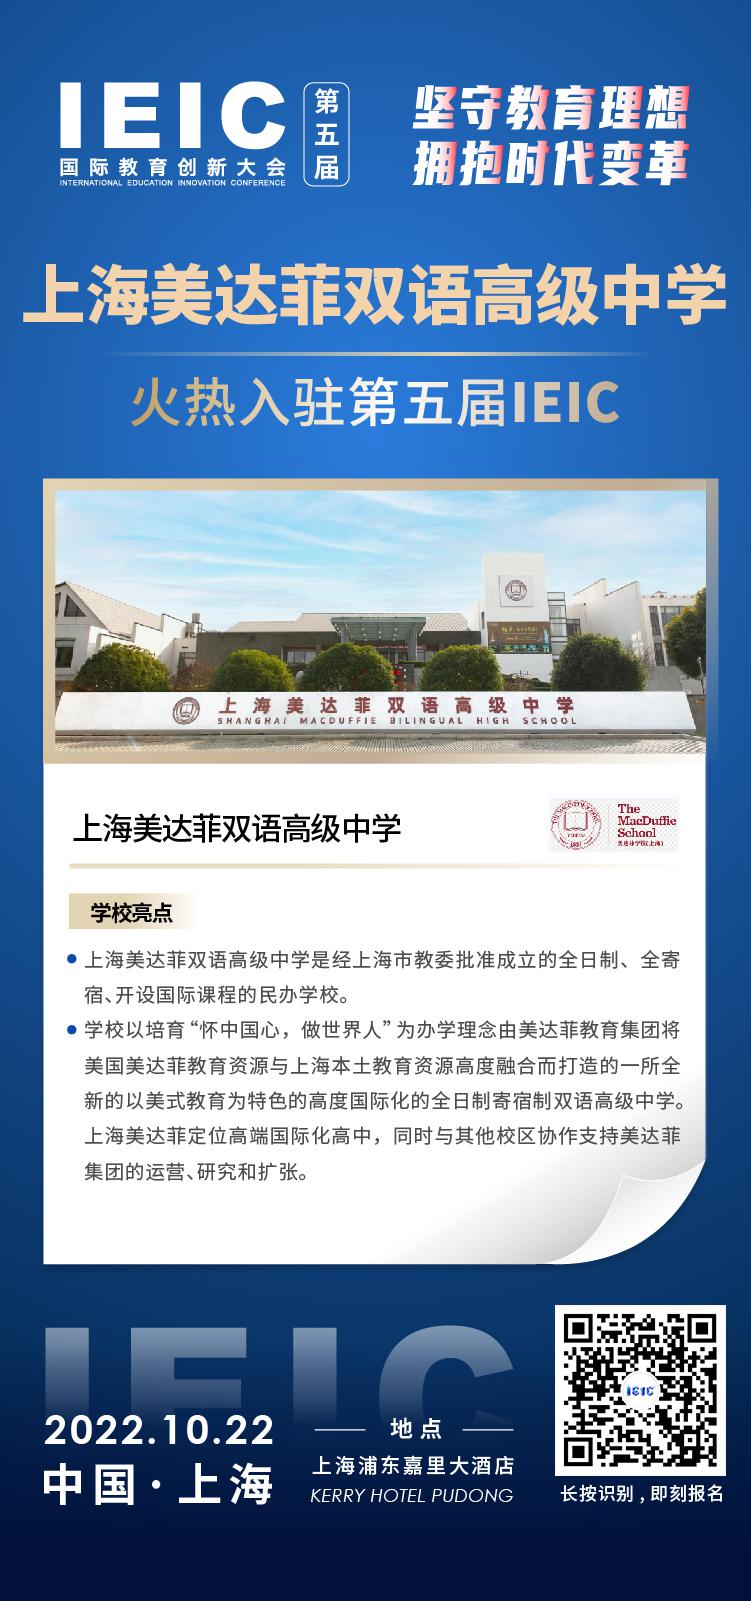 上海美达菲双语高级中学成功入驻参加2022年远播第五届IEIC国际教育创新大会